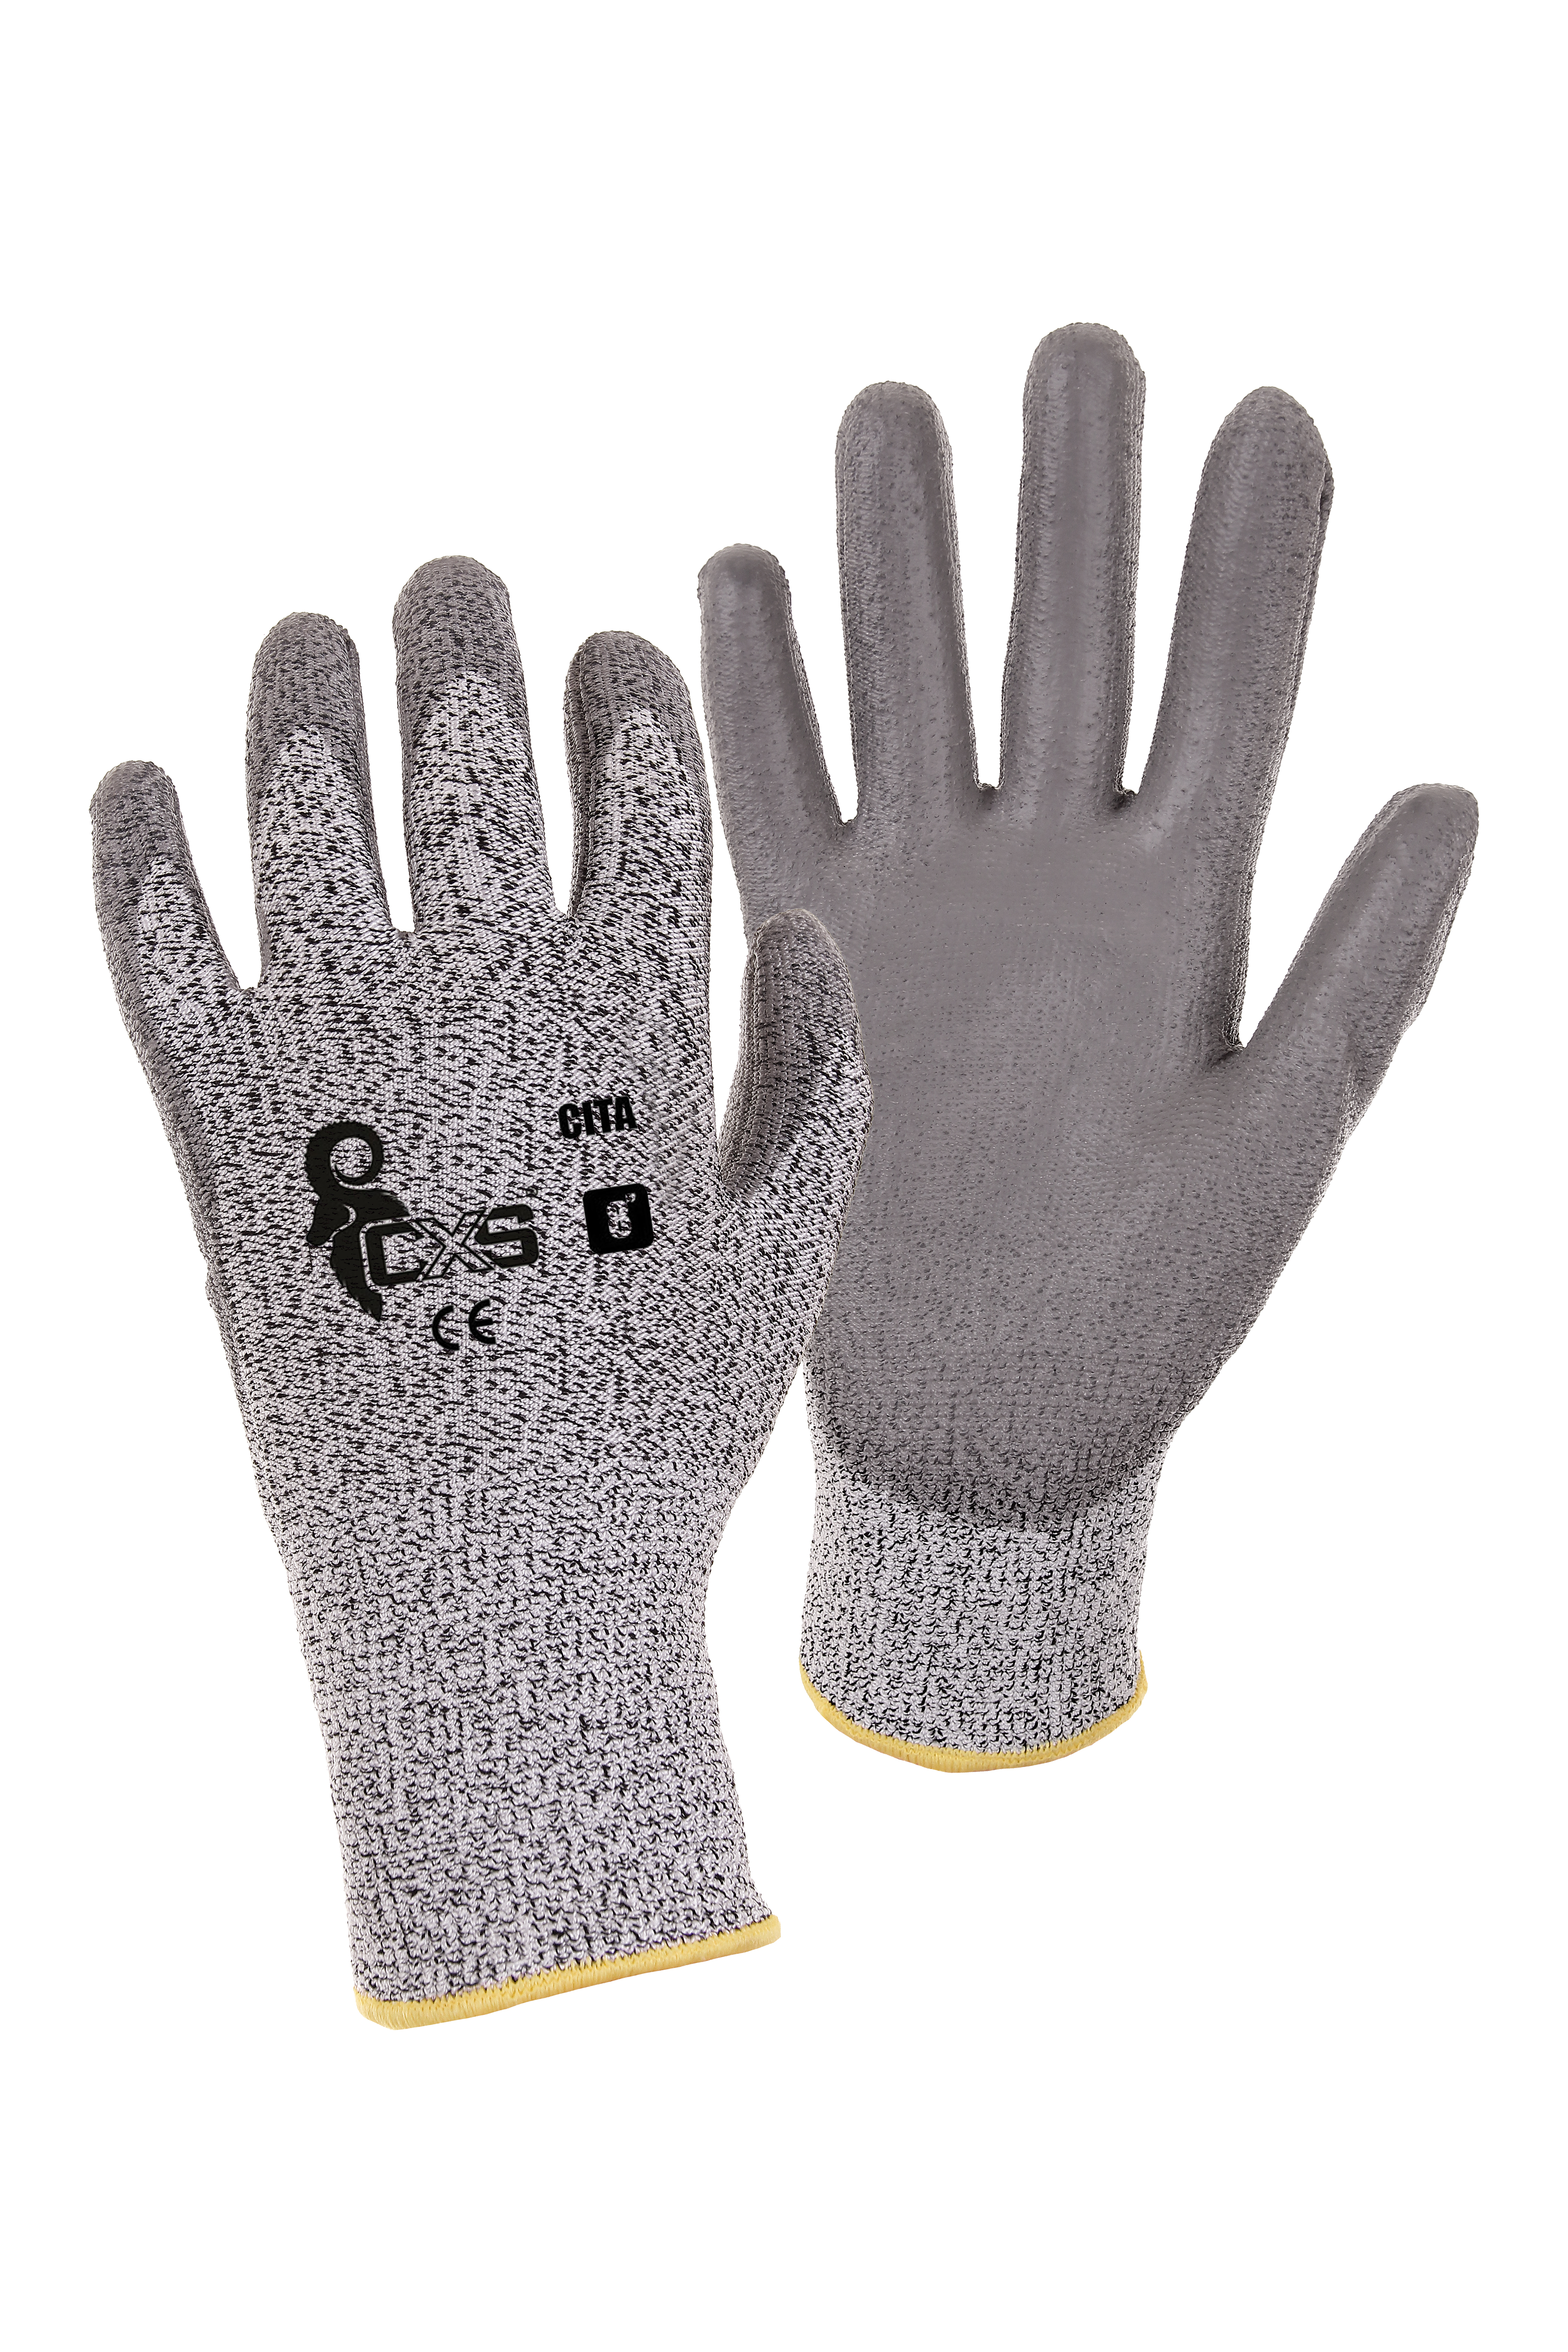 rukavice CITA, protipořezové, šedé, velikost 10 0.05 Kg TOP Sklad4 606060 31